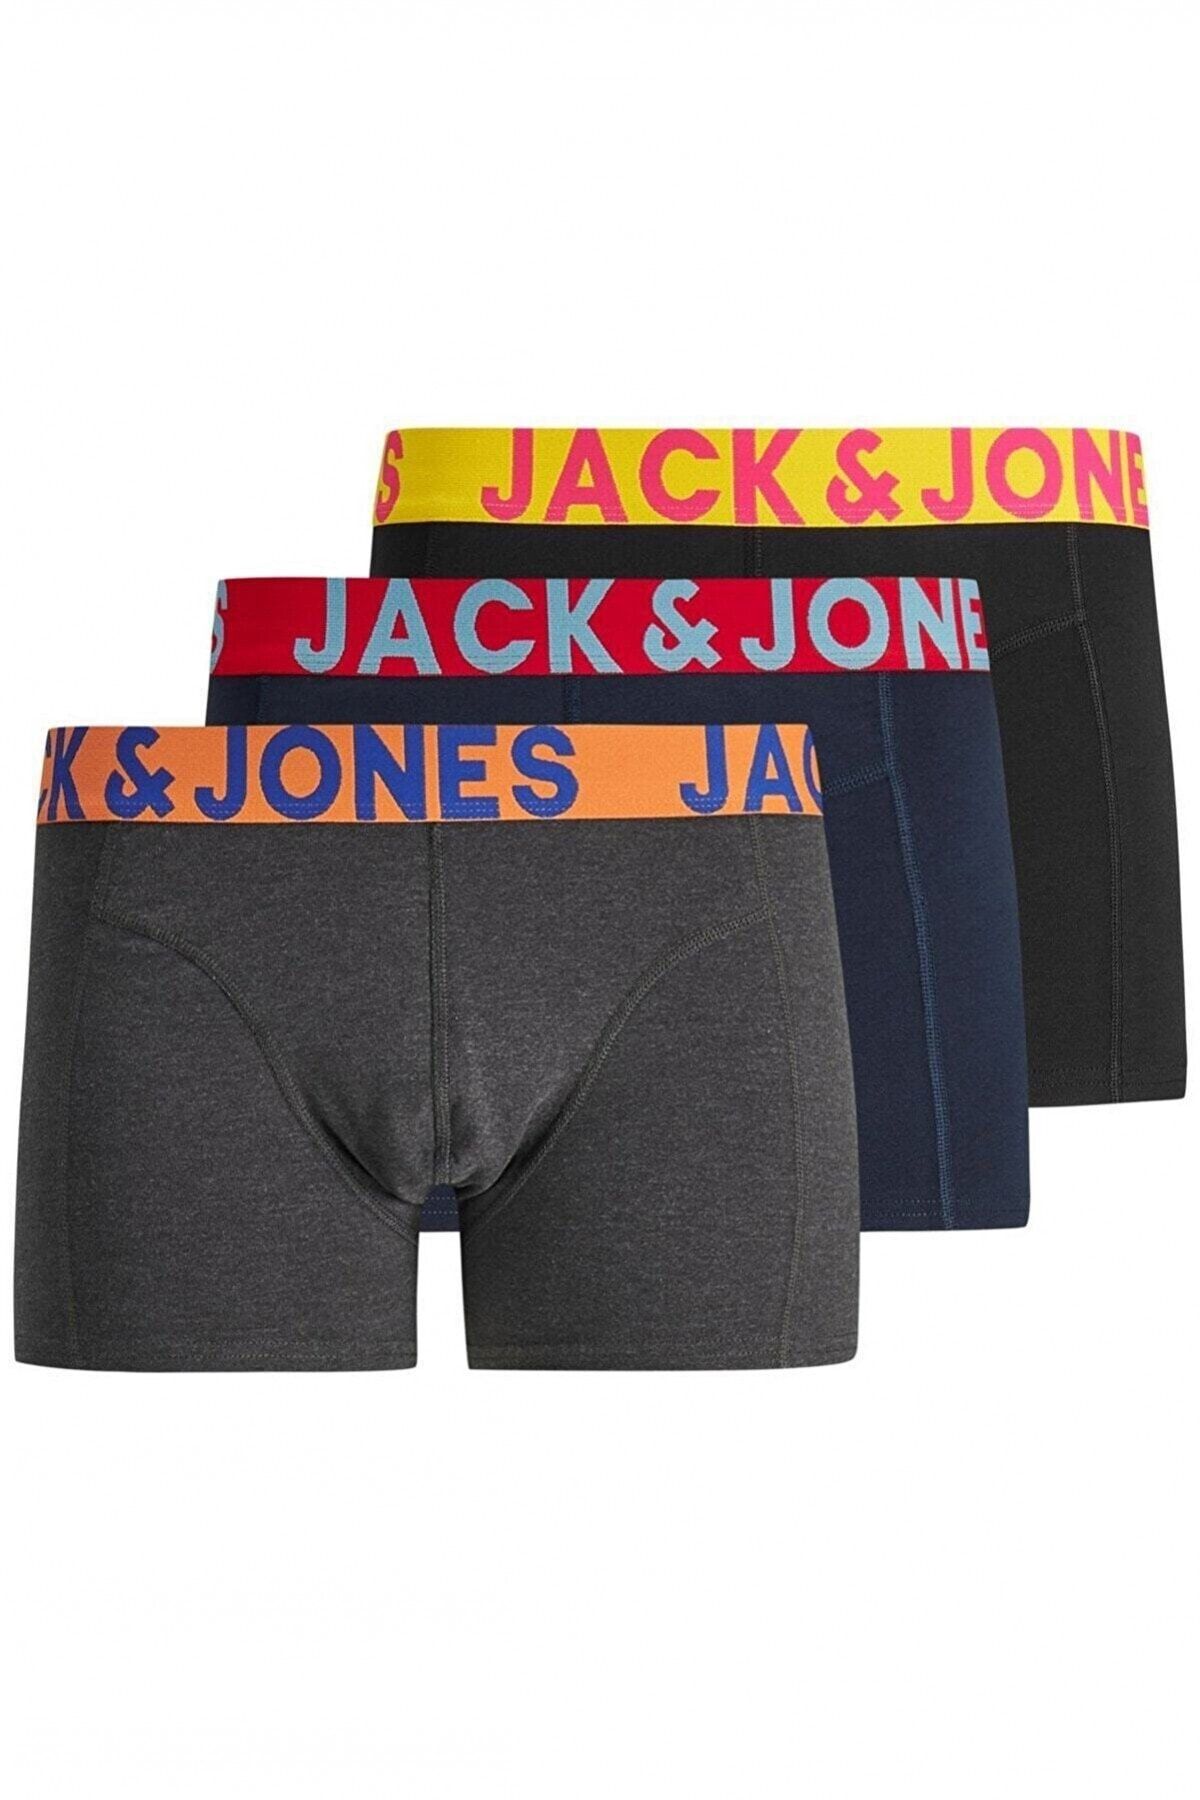 Jack & Jones Jaccrazy Solıd Trunks 3 Pack Noos